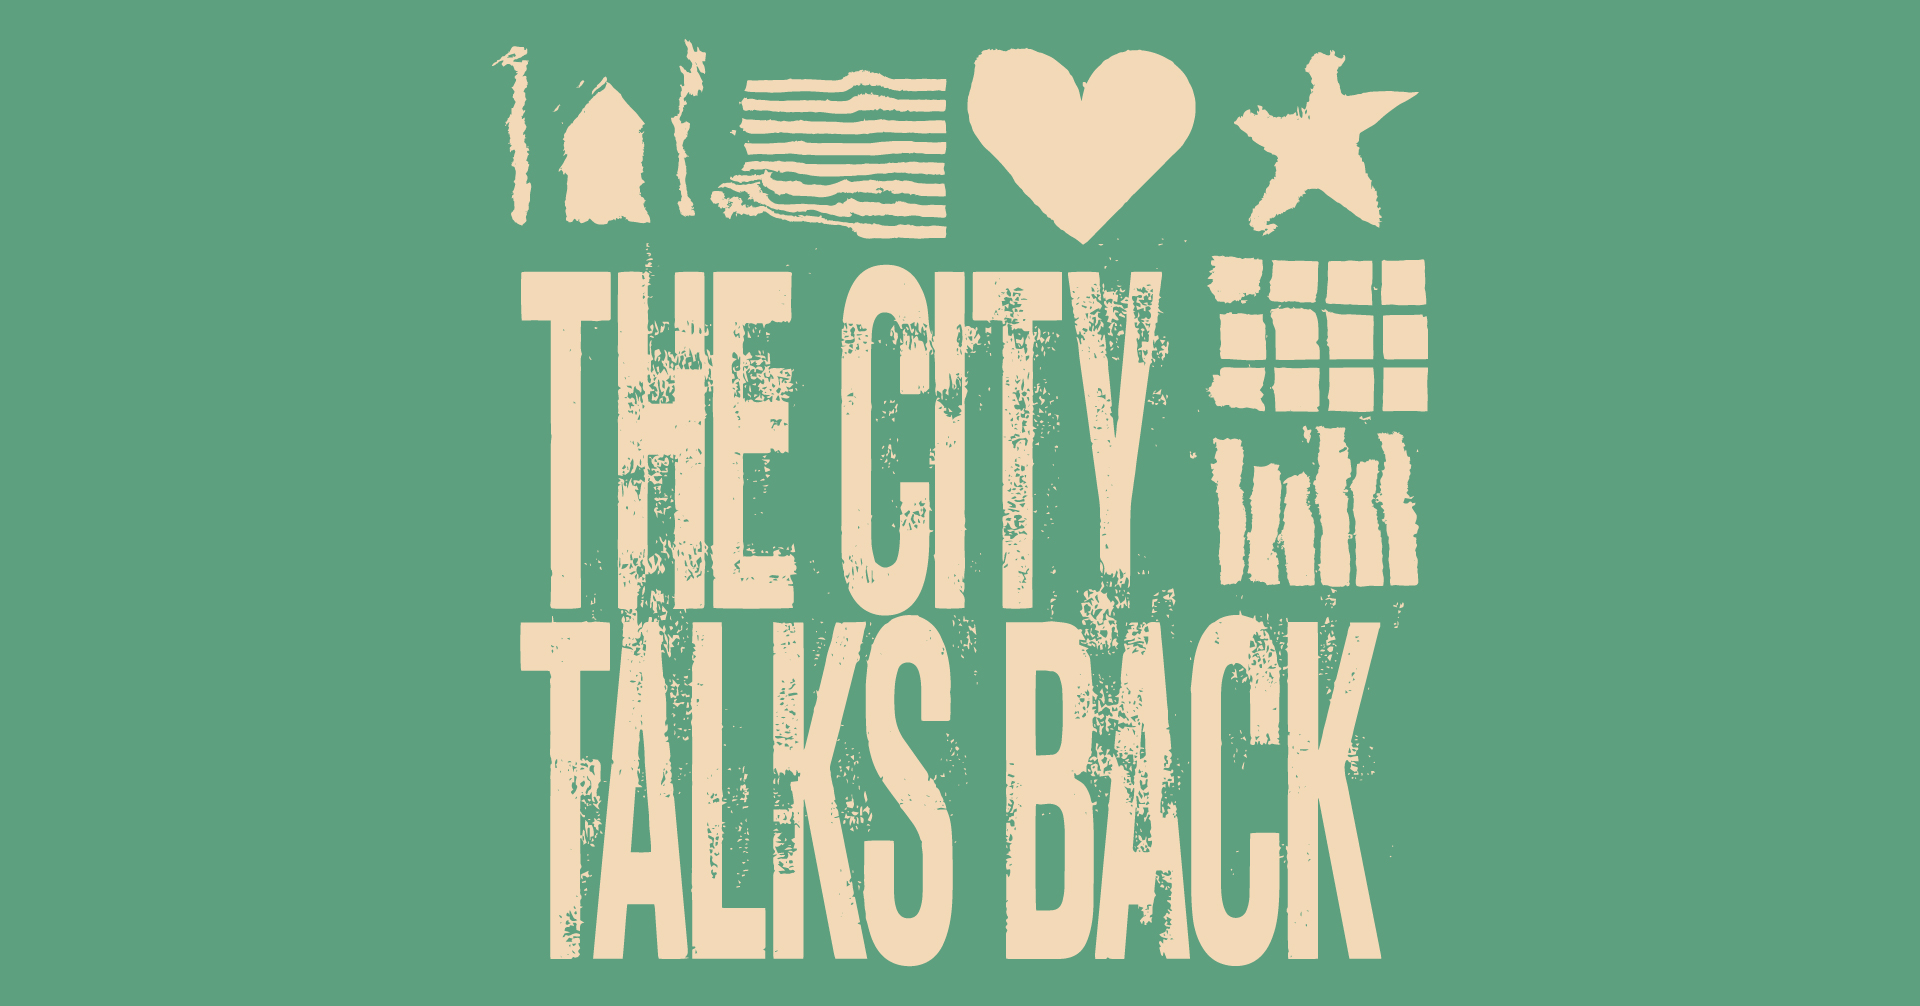 ΛΕΞΕΙΣ & ΣΚΕΨΕΙΣ – THE CITY TALKS BACK: ASSEMBLY 2 φιλοξενείται στη Στέγη του Ιδρύματος Ωνάση